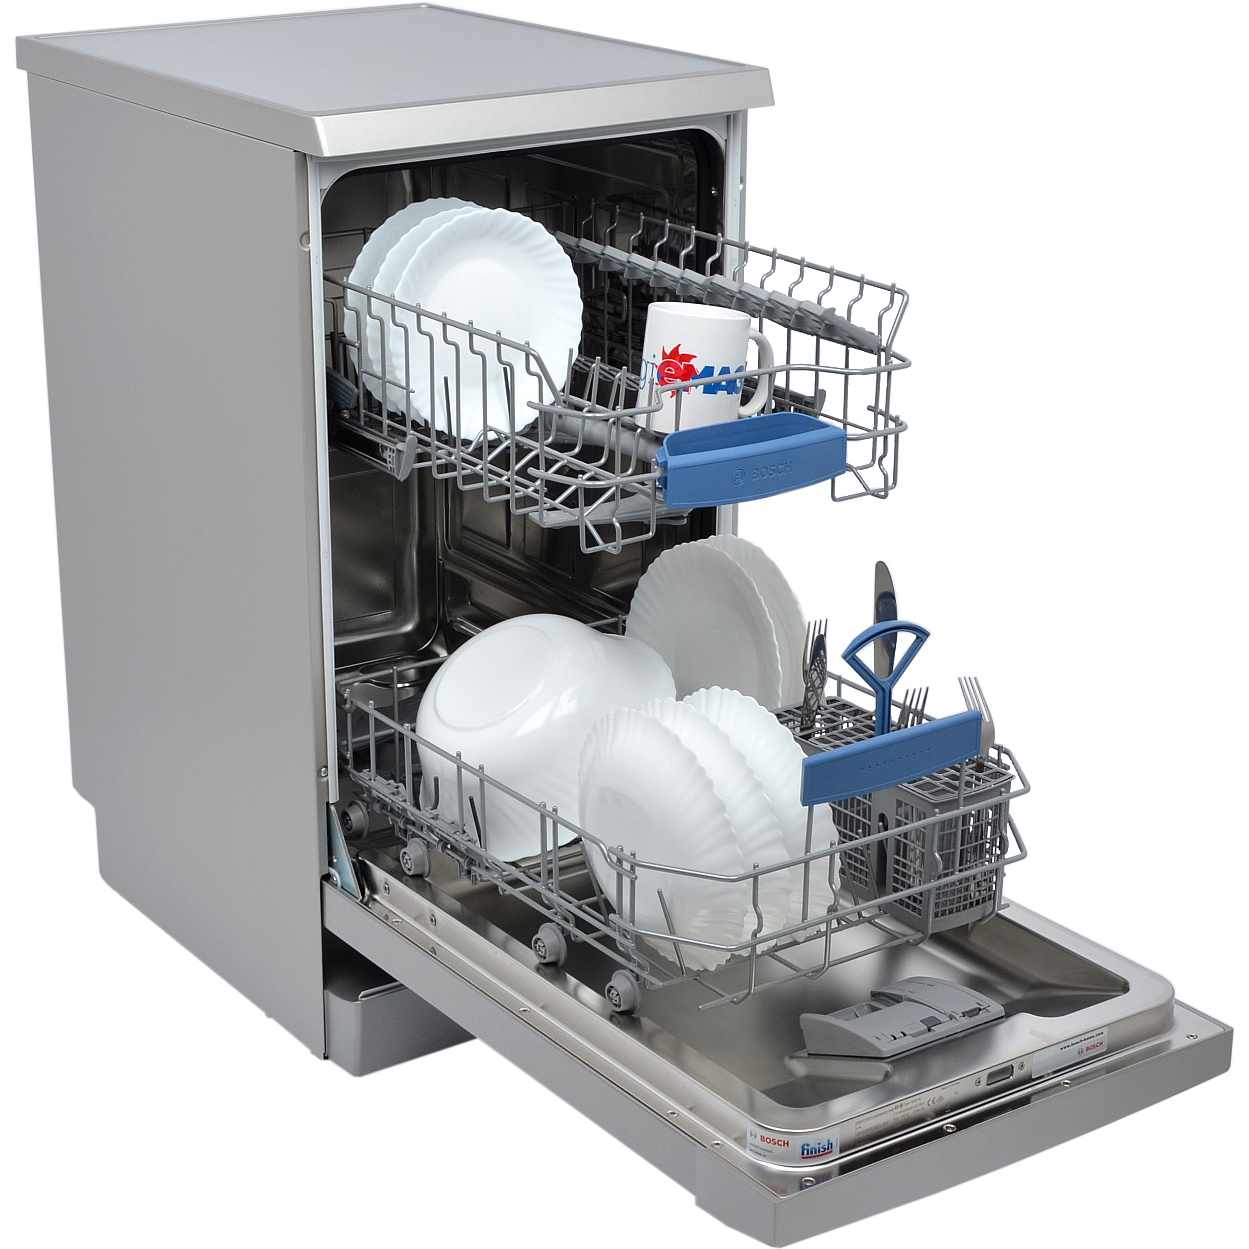 Посудомоечные машины 3 комплекта. Посудомоечная машина Bosch sps2ikw1br. Посудомоечная машина Neff s855hmx50r. ПММ бош sps53. Посудомоечная машина Bosch spv6hmx1mr.